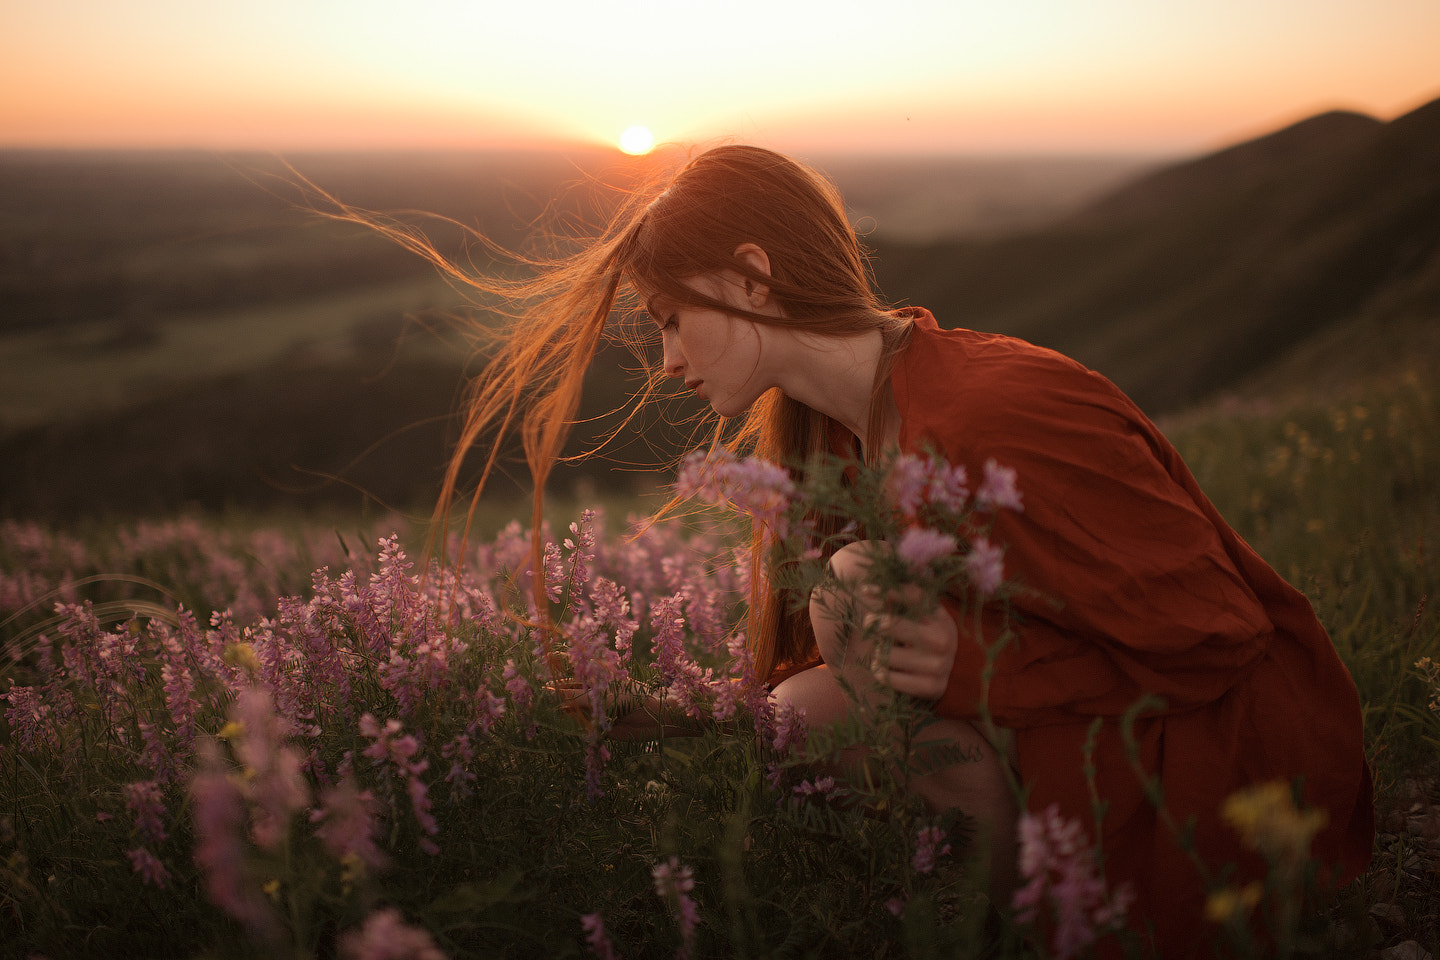 Marat Safin Women Redhead Sunset Red Dress Nature Field Flowers Wind Long Hair 1440x960